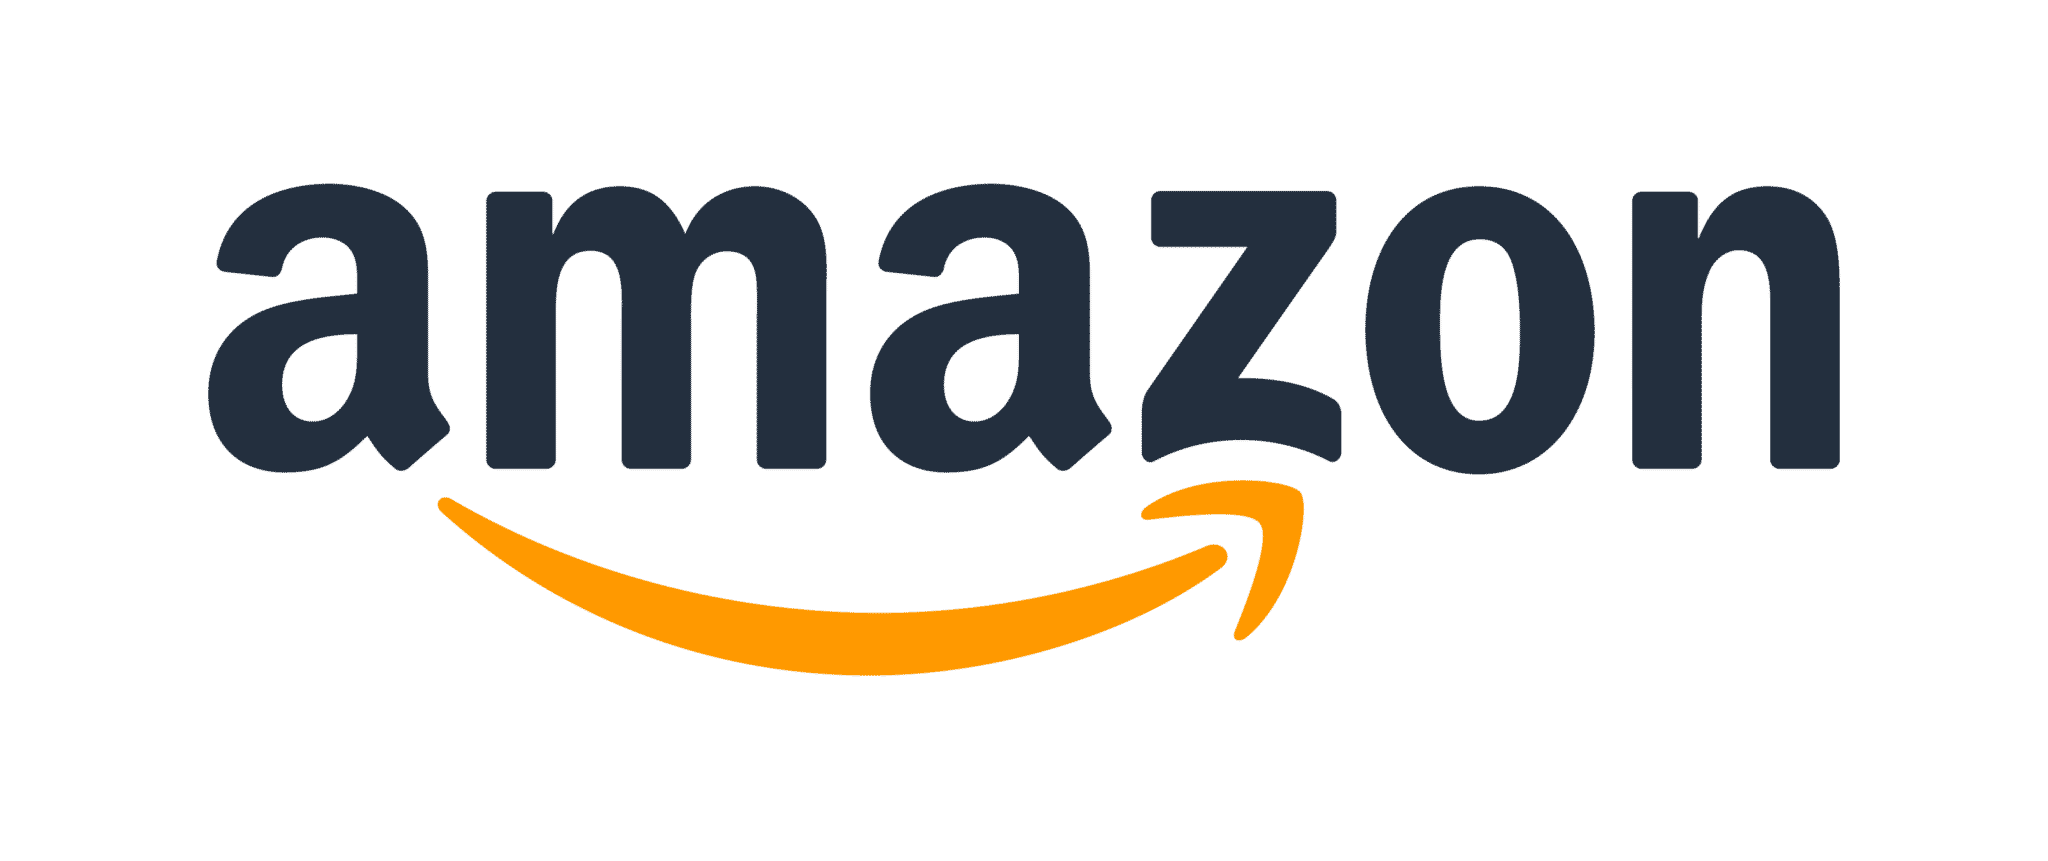 prodotti Amazon gratis offerte amazon oggi Prodotti ricondizionati significato